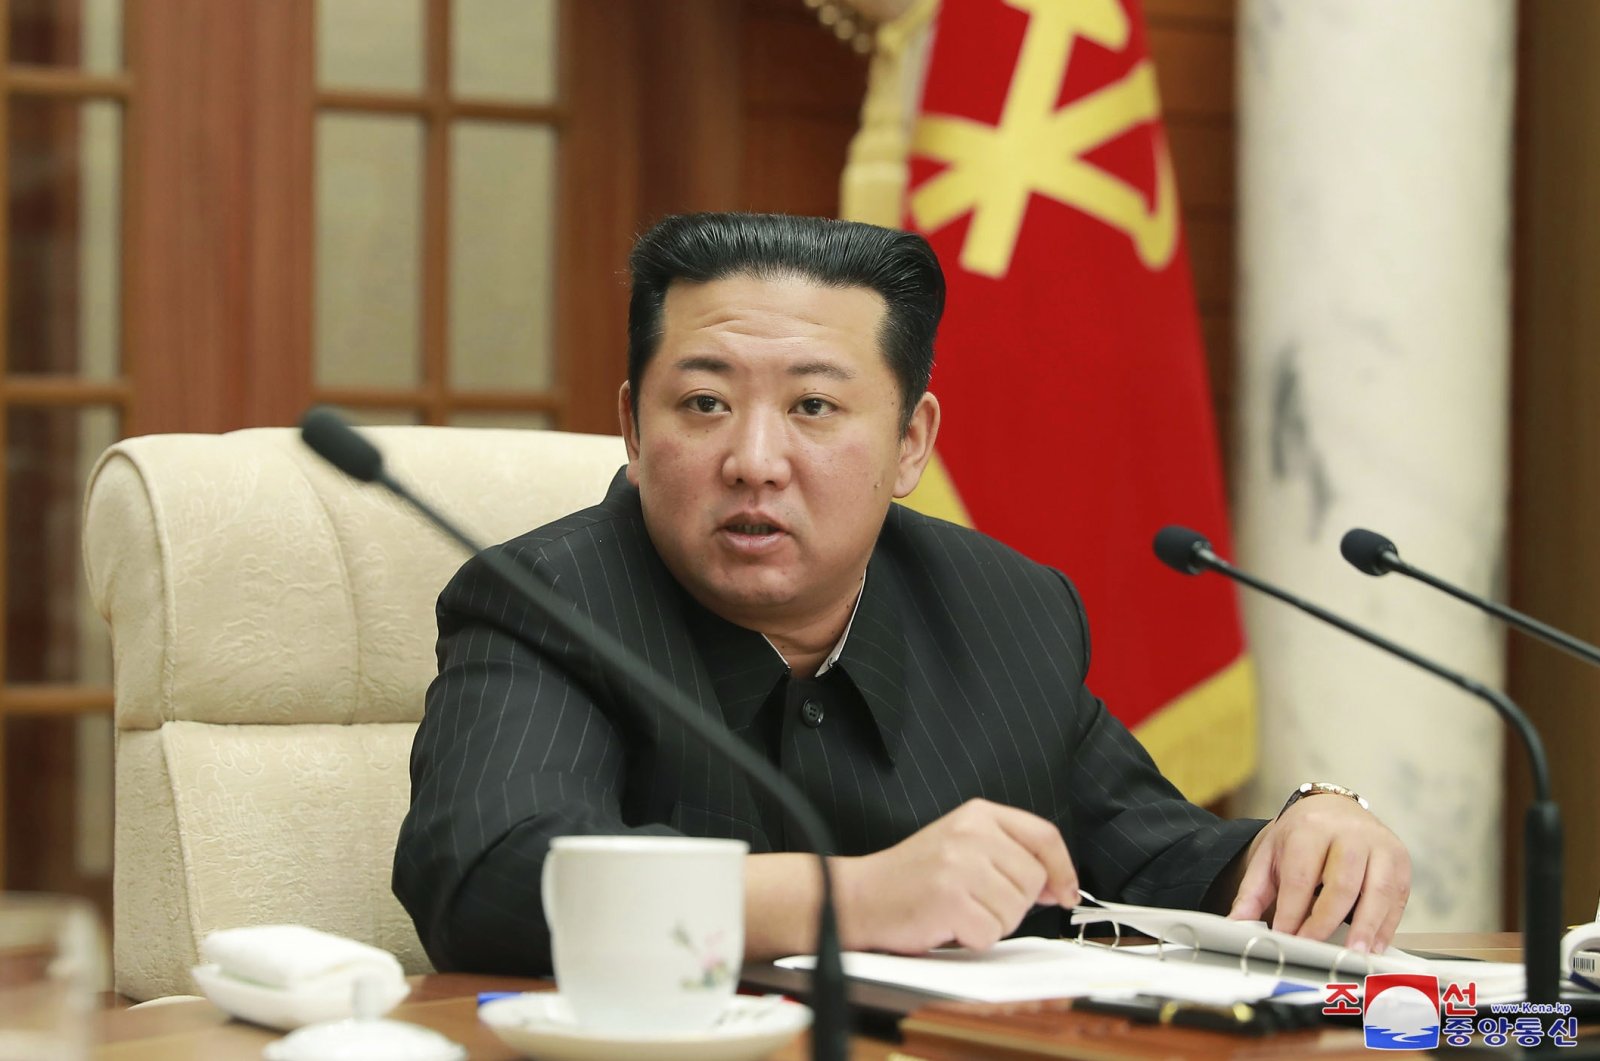 Korea Utara melanjutkan program nuklir, mendapat untung dari serangan siber: PBB